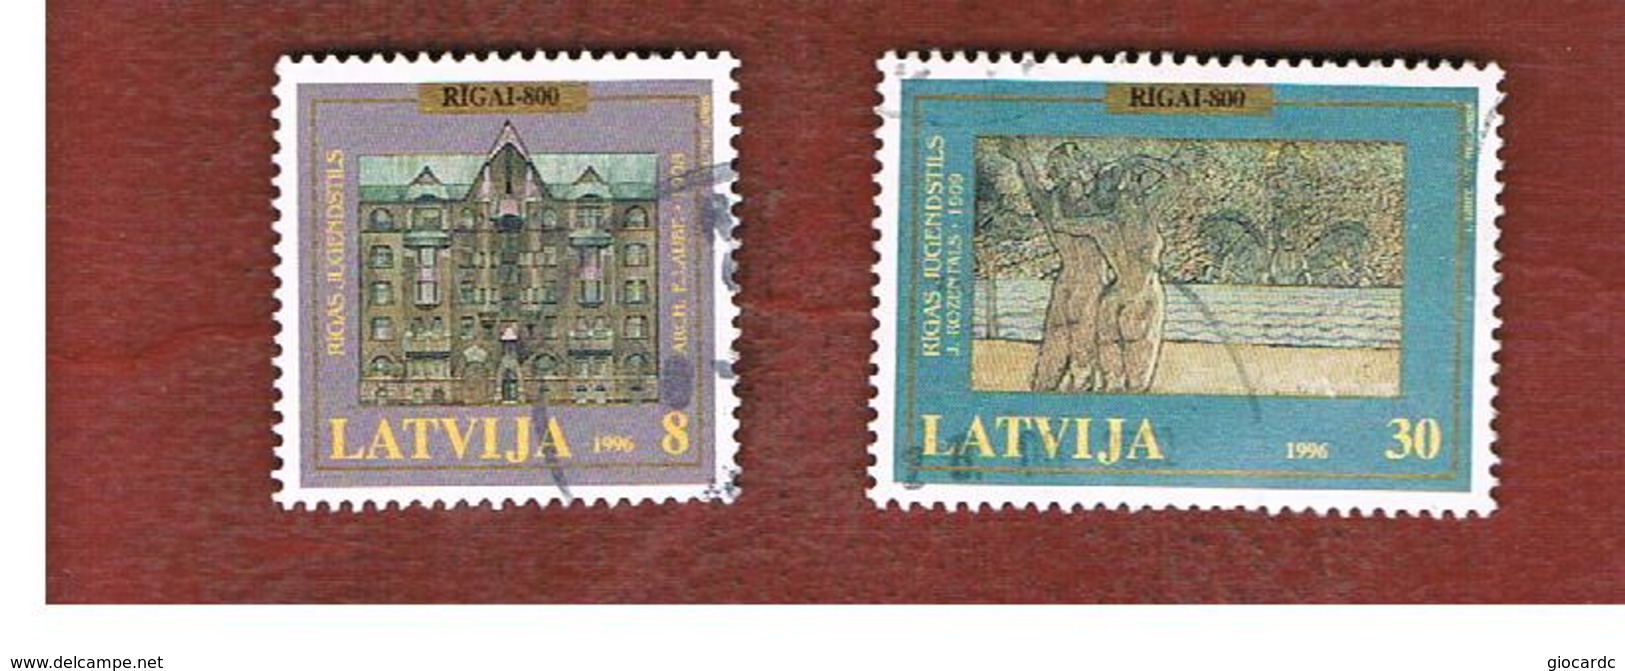 LETTONIA (LATVIA)   -  SG 456.459  -  1996 800^ ANNIVERSARY OF RIGA  -   USED - Lettonia